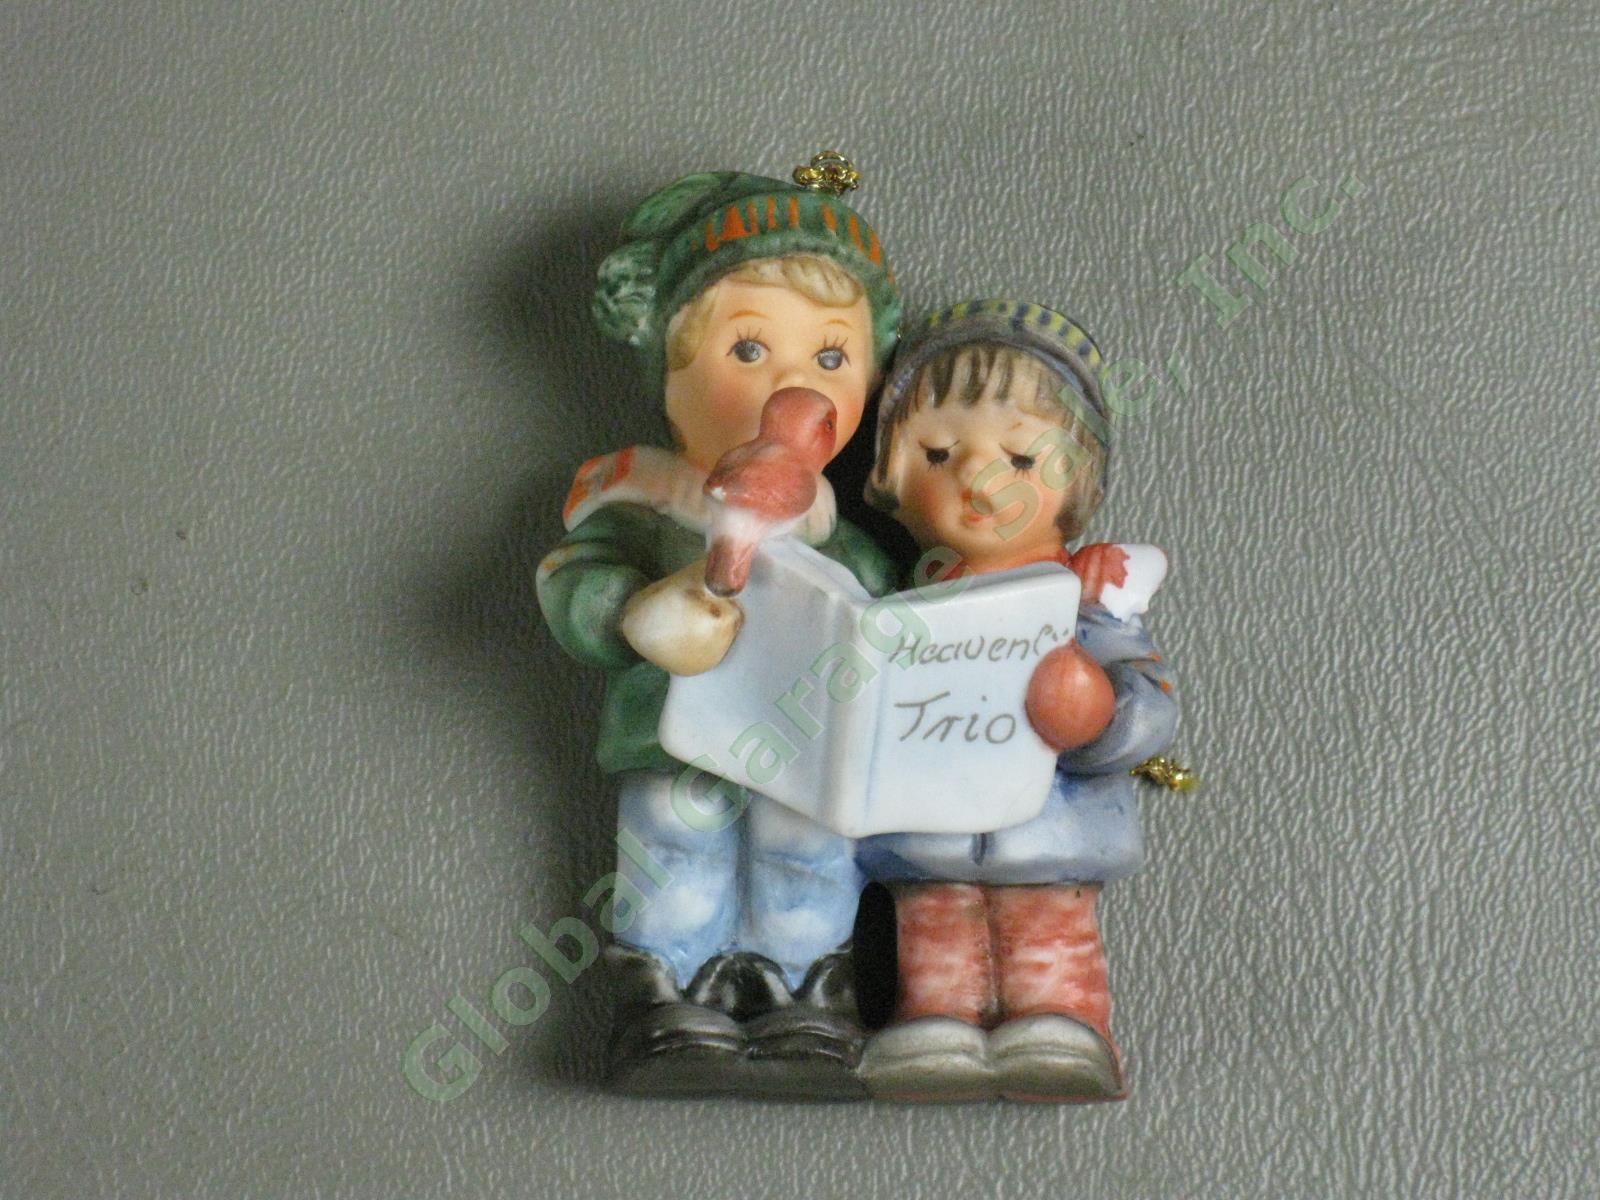 10 Vintage M.I. Hummel Goebel Figurine Lot TMK 2 3 5 6 Figurines Ornaments NR 15